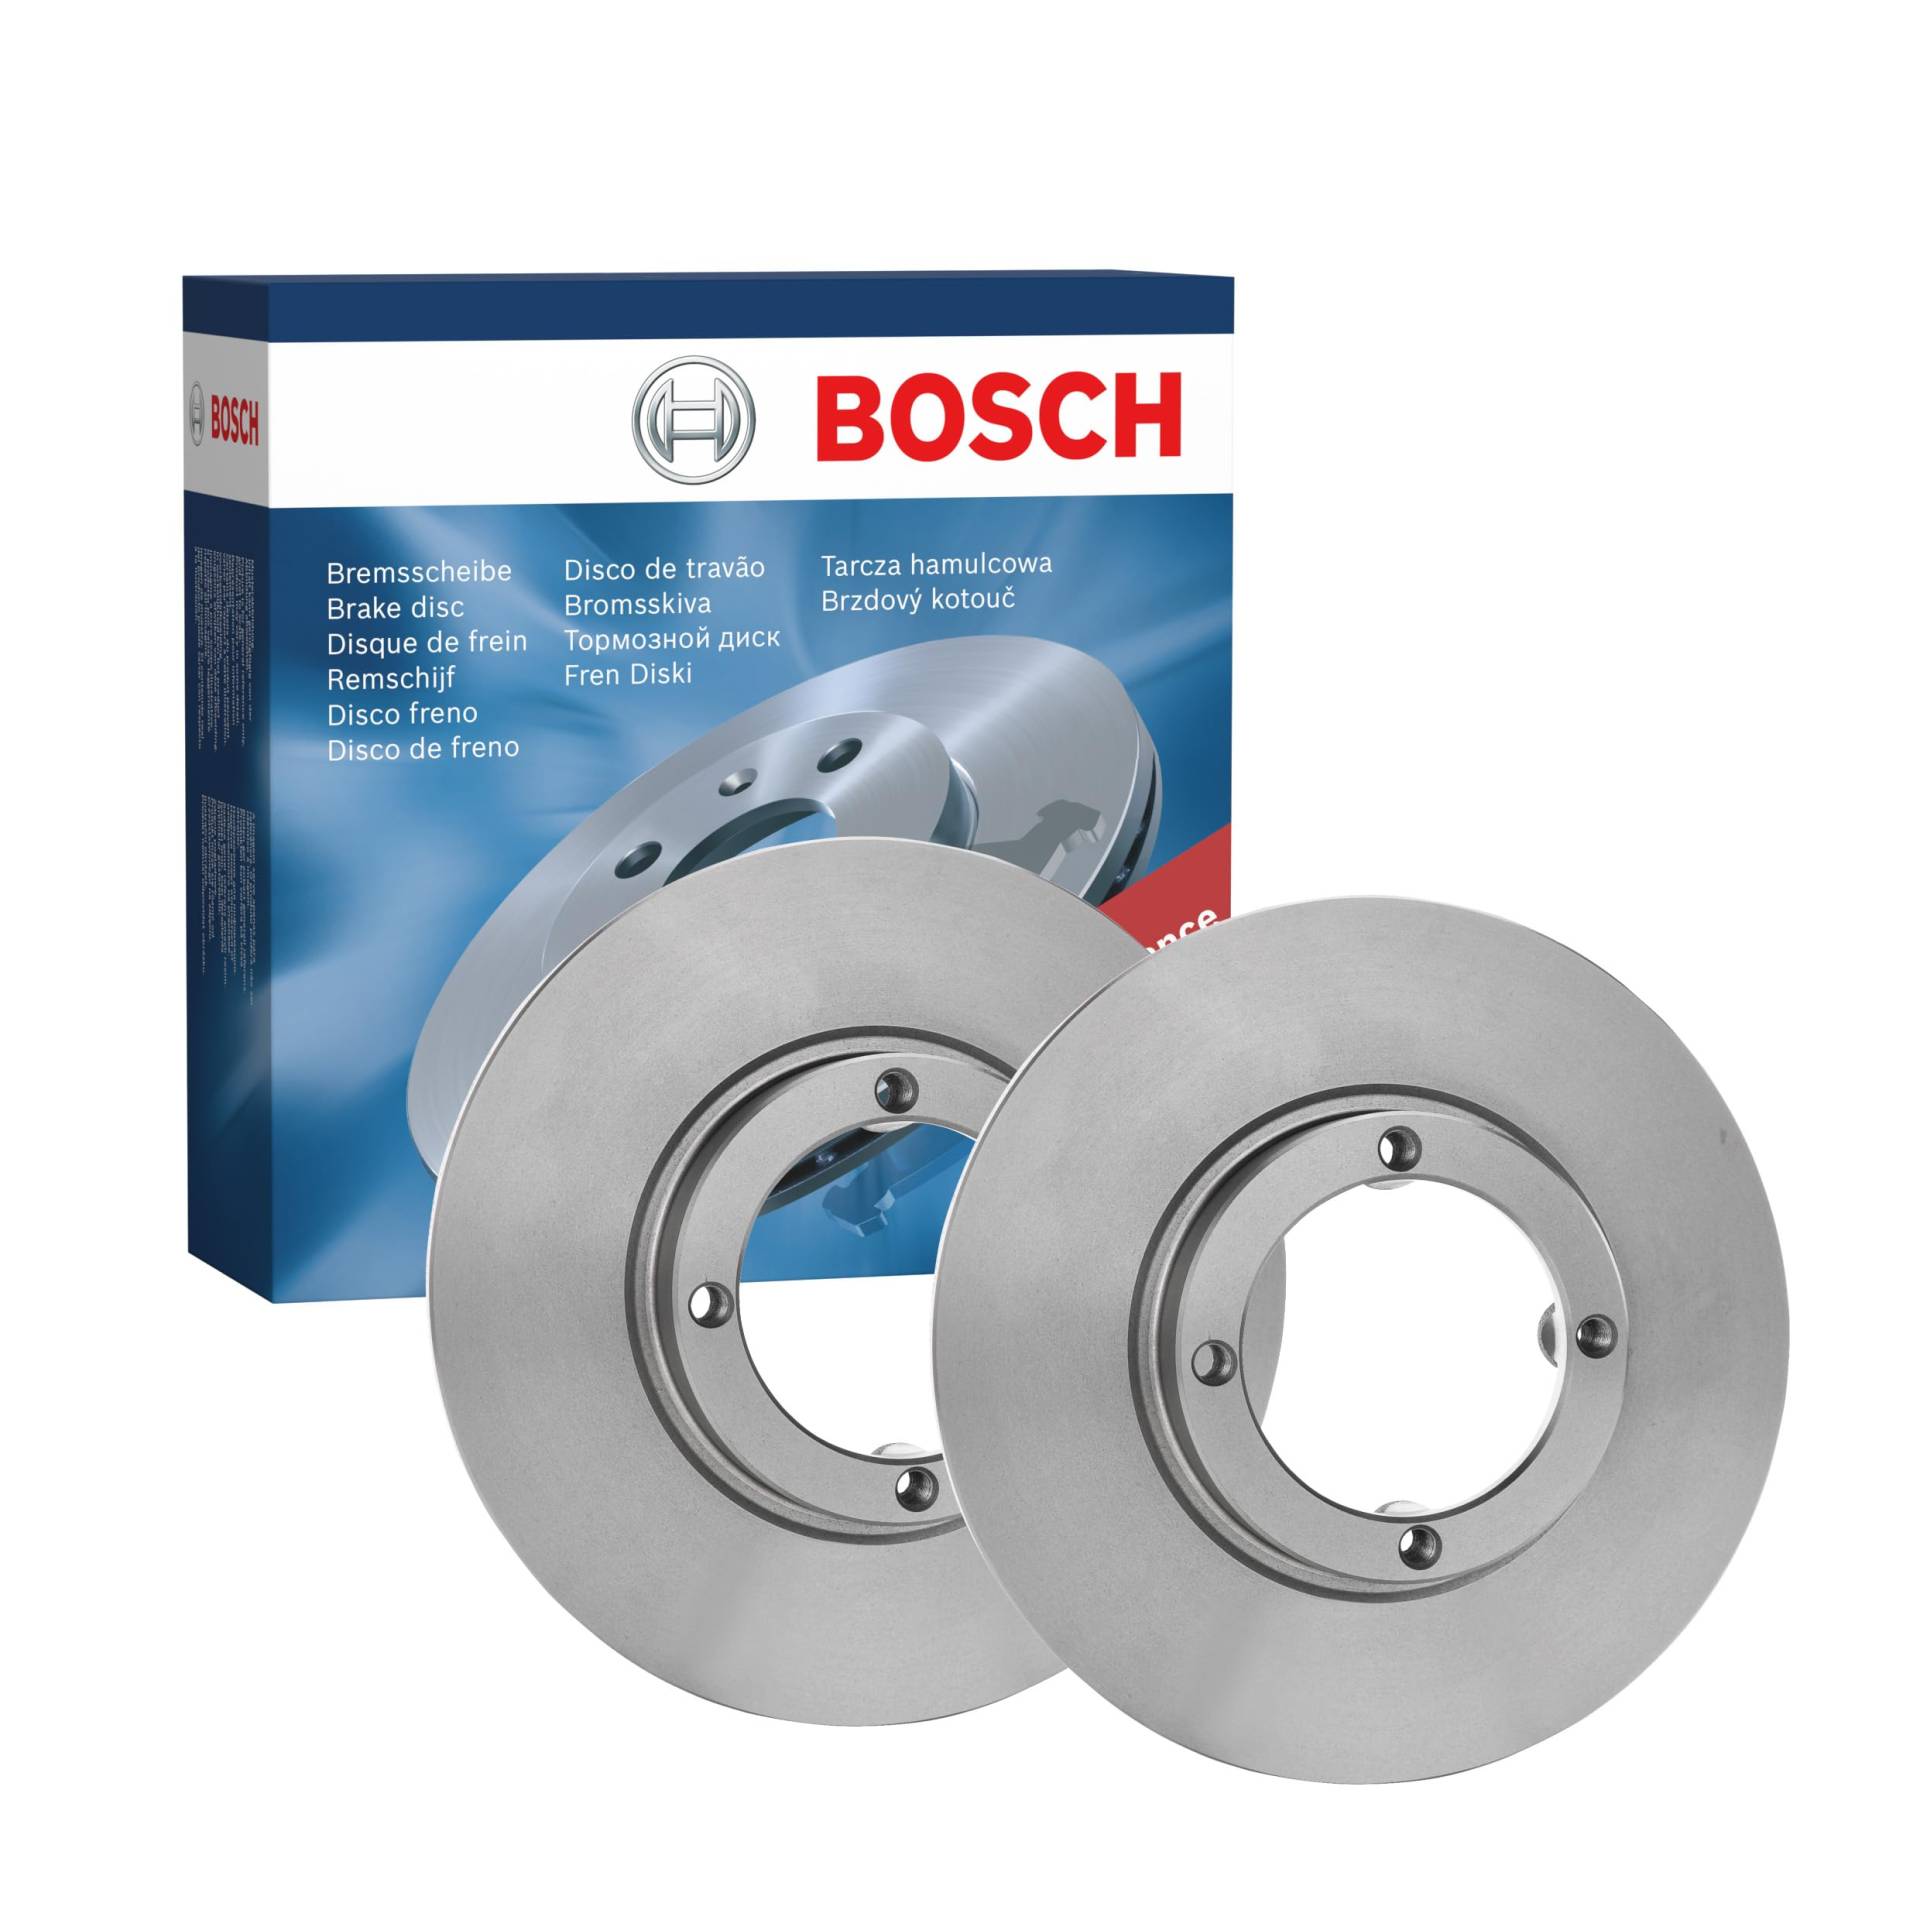 Bosch BD626 Bremsscheiben - Vorderachse - ECE-R90 Zertifizierung - zwei Bremsscheiben pro Set von Bosch Automotive